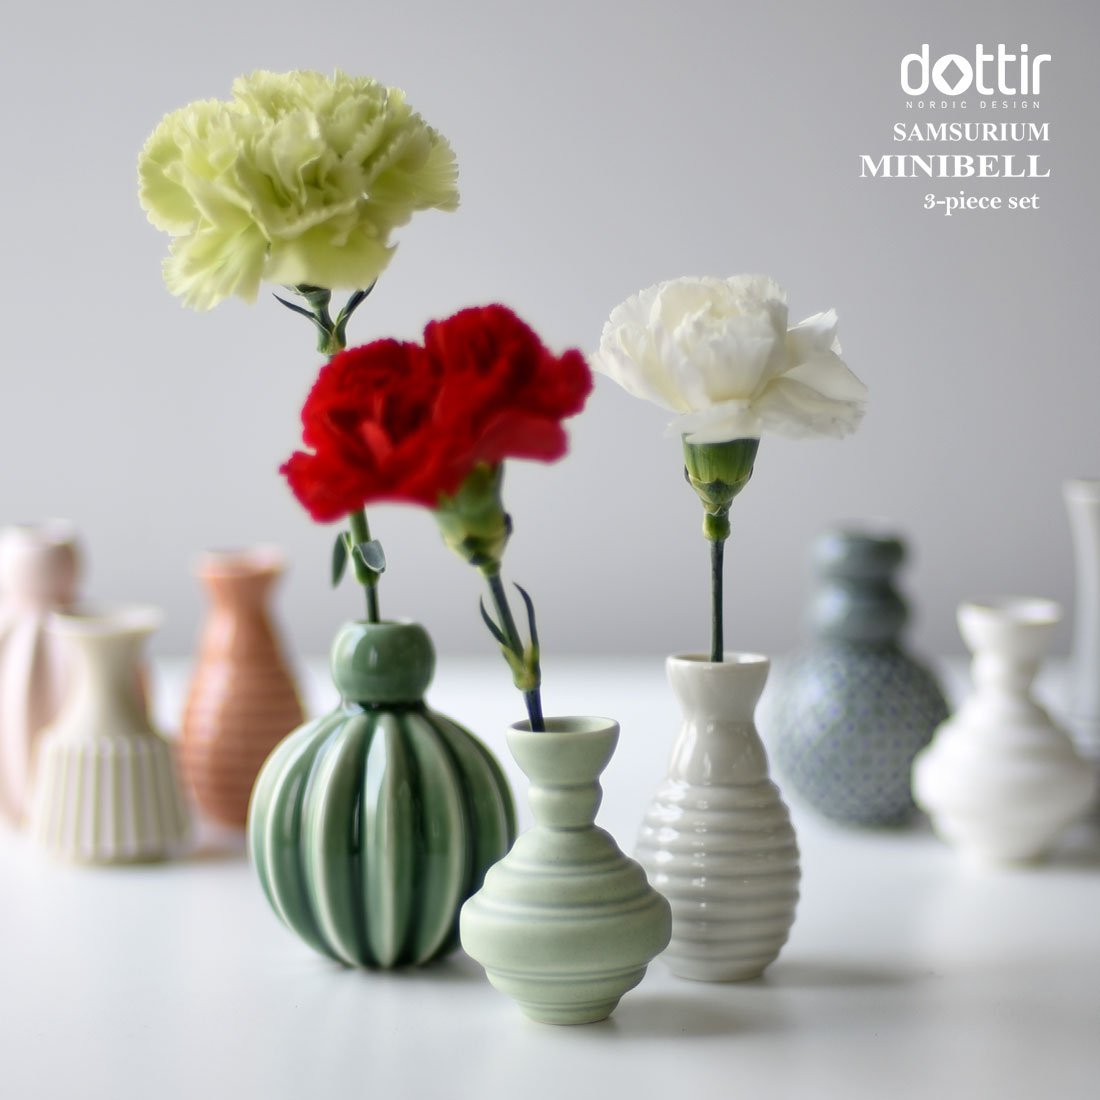 Dottir Samsurium Minibell Vase-Sæt, Blue/Grey